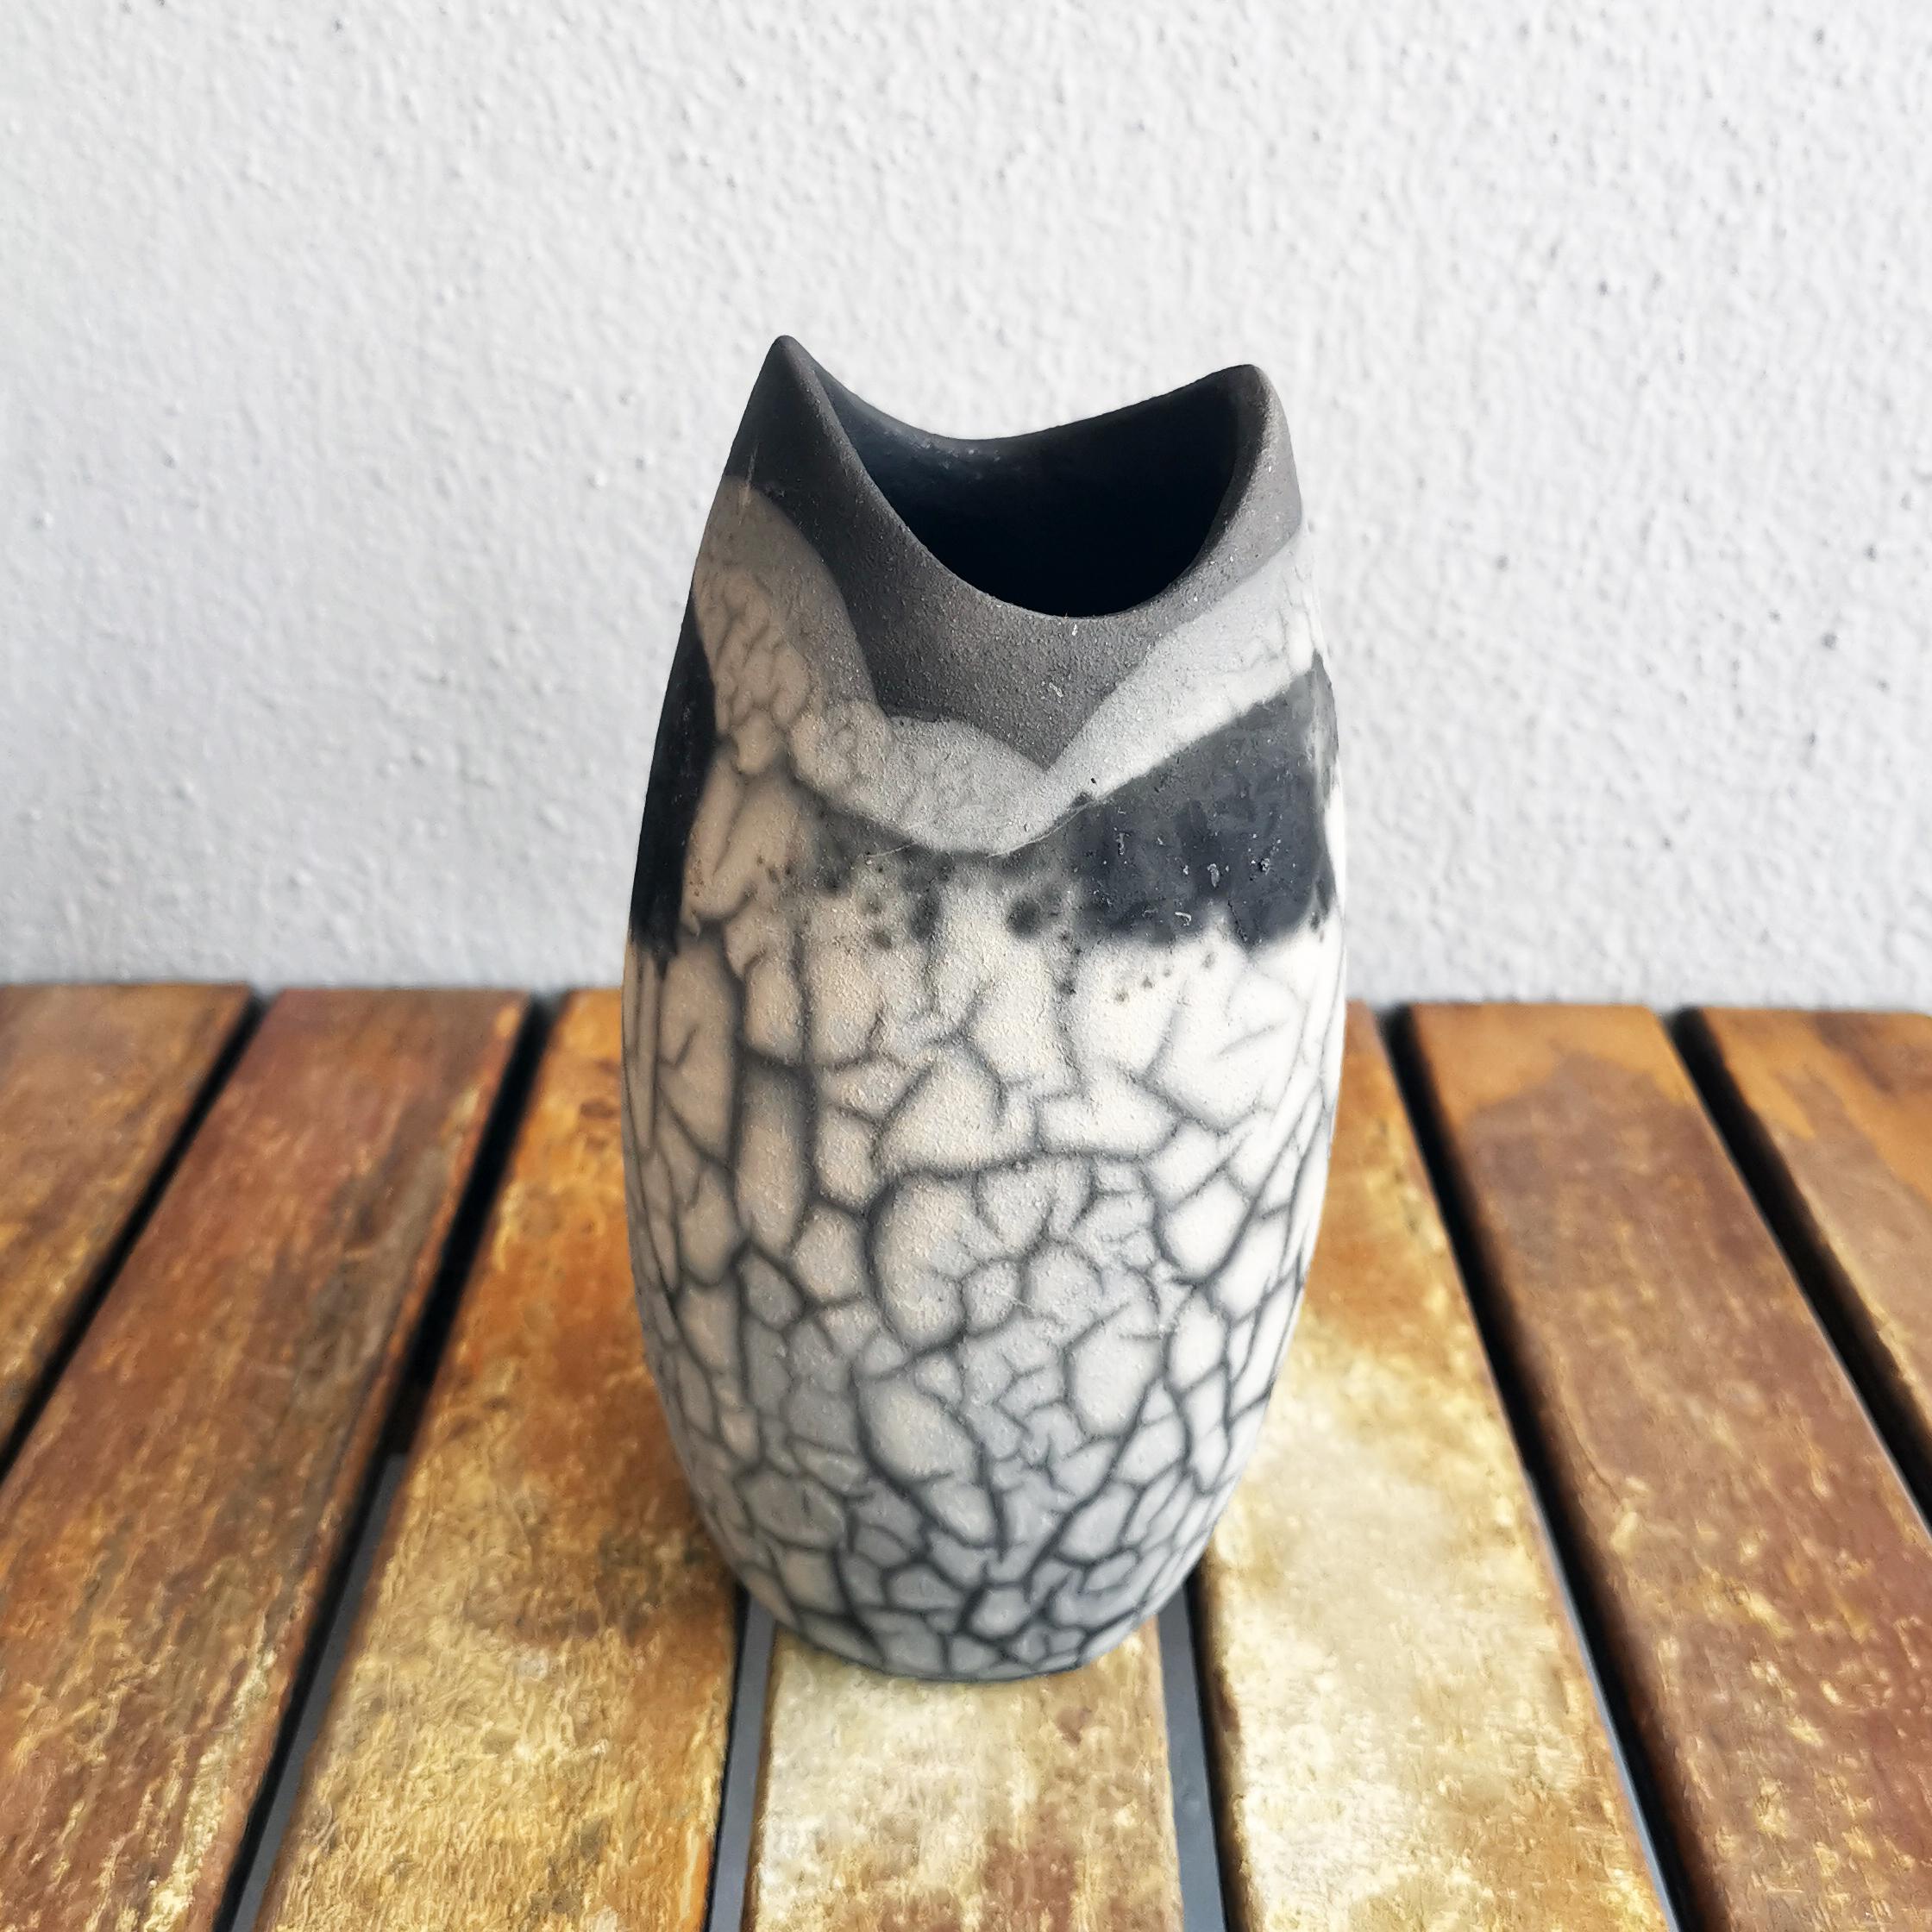 Koi (鯉 ) (n) carpe

Notre vase Koi est en forme de bouteille avec une bouche arquée ondulée qui ressemble légèrement à la bouche d'un poisson. Son design éclectique s'intègre parfaitement à tout style de décoration intérieure.

Le vase Koi peut être